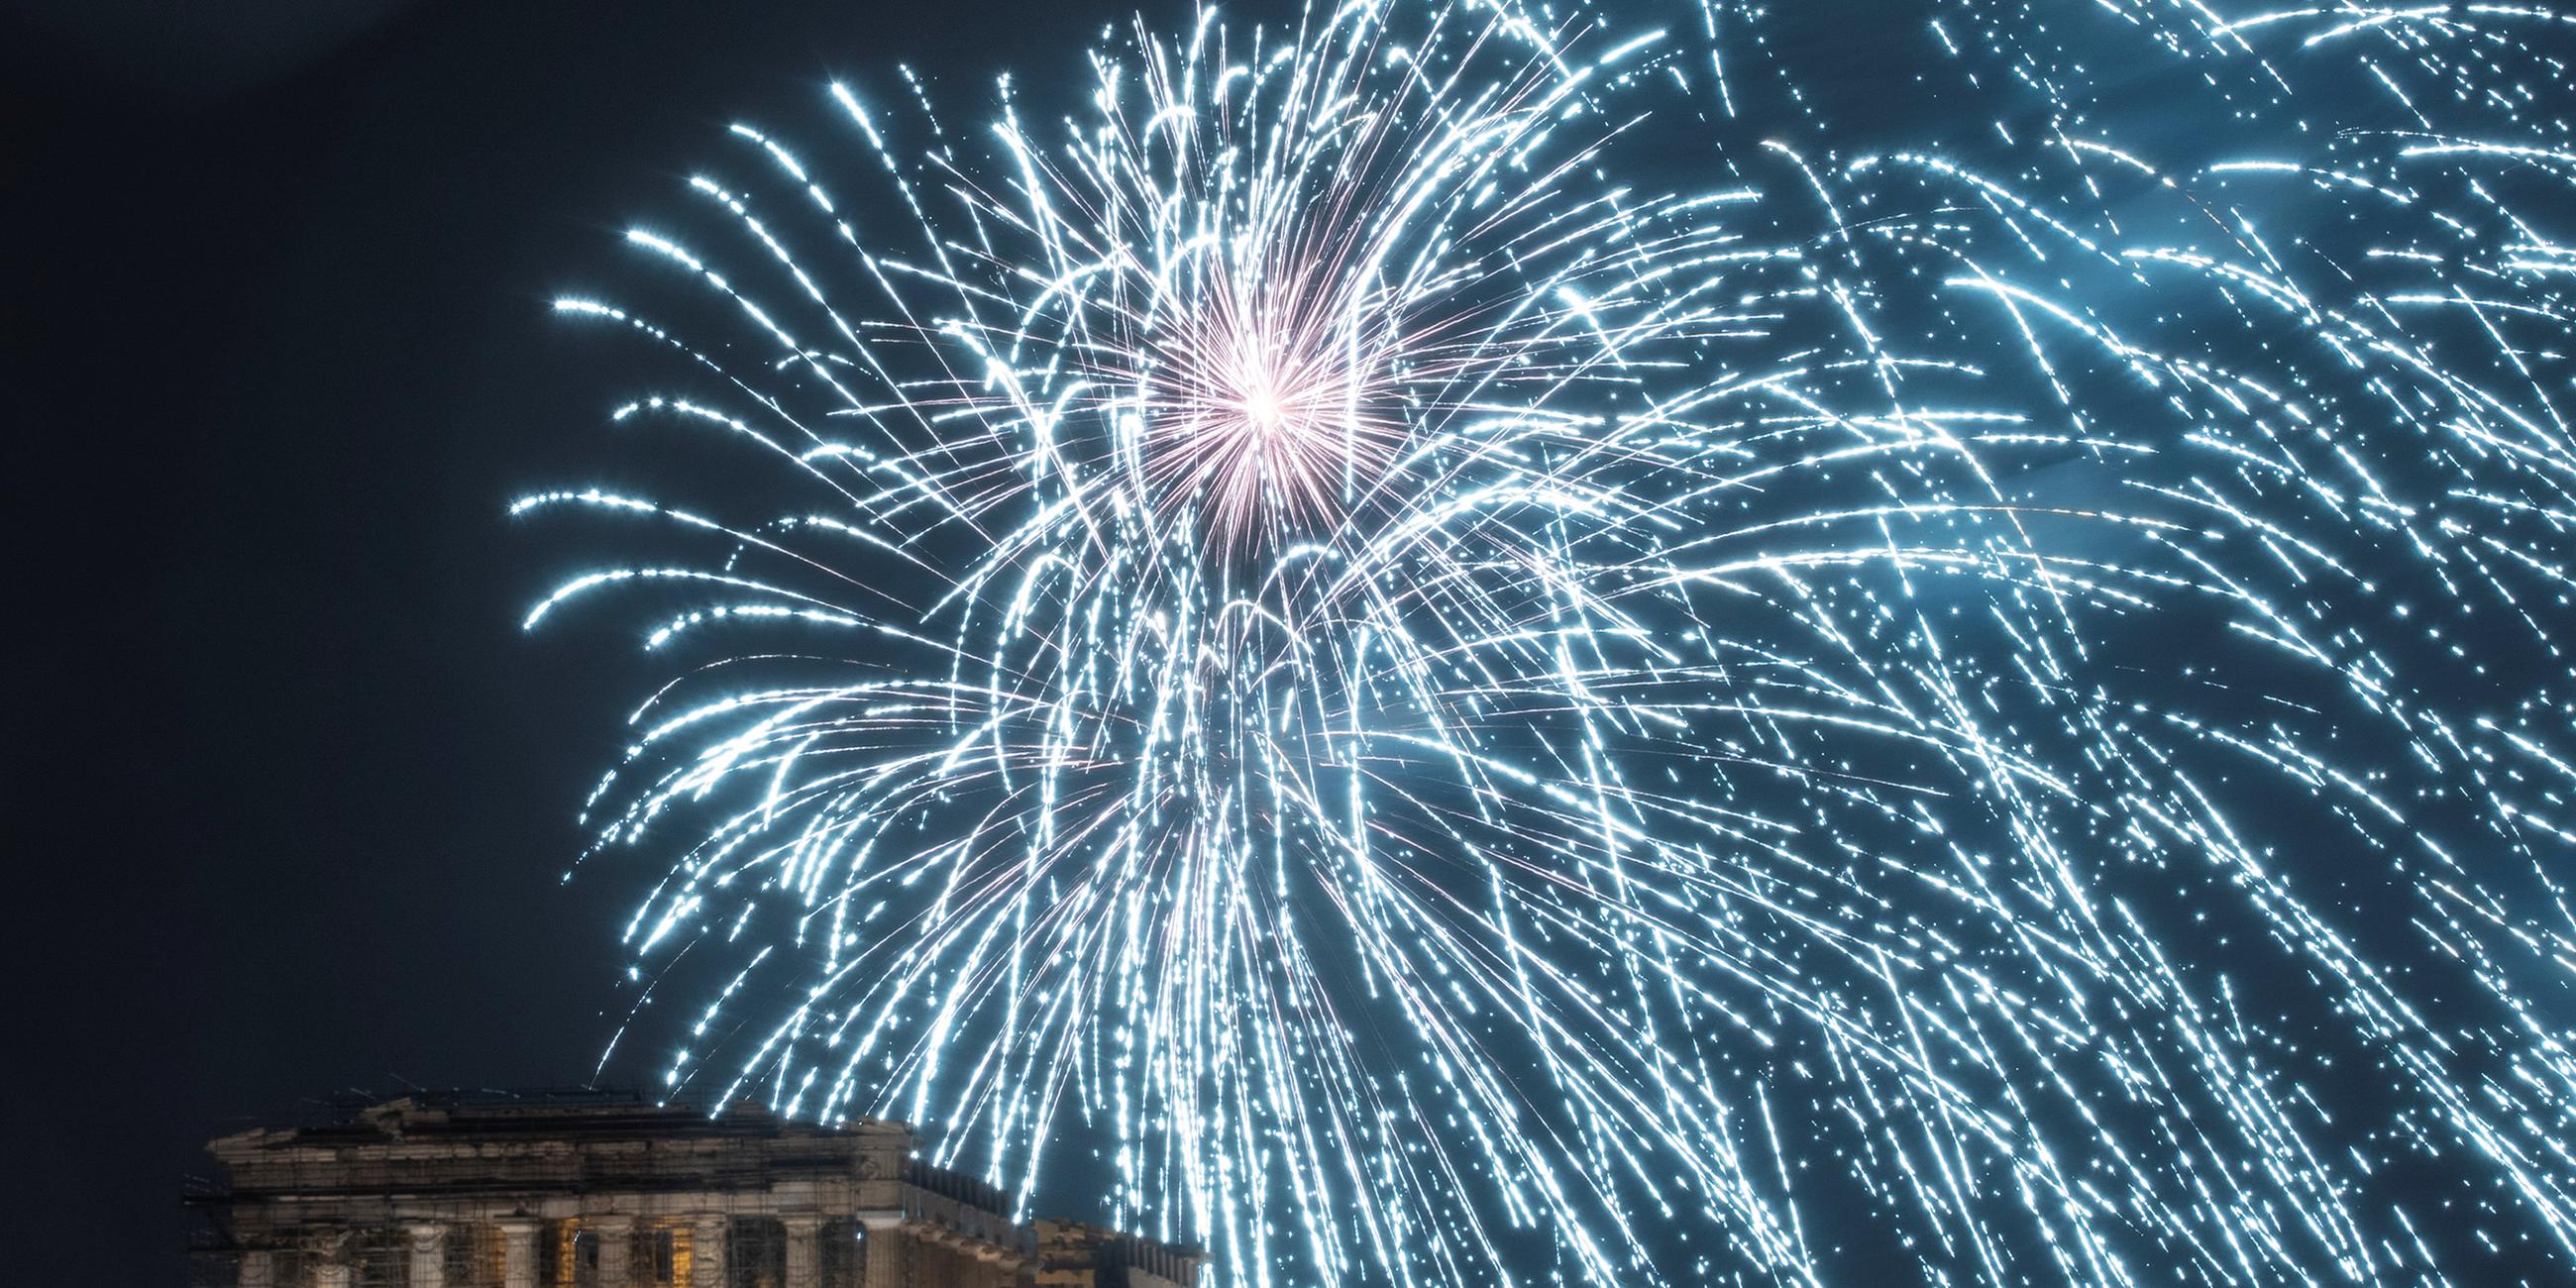 Blaues Feuerwerk über der Akropolis - so starteten die Griechen um 23 Uhr deutscher Zeit ins neue Jahr. Zuvor hatte sich der griechische Regierungschef Alexis Tsipras zuversichtlich gezeigt, dass seine Landleute im neuen Jahr bessere Zeiten erleben werden.